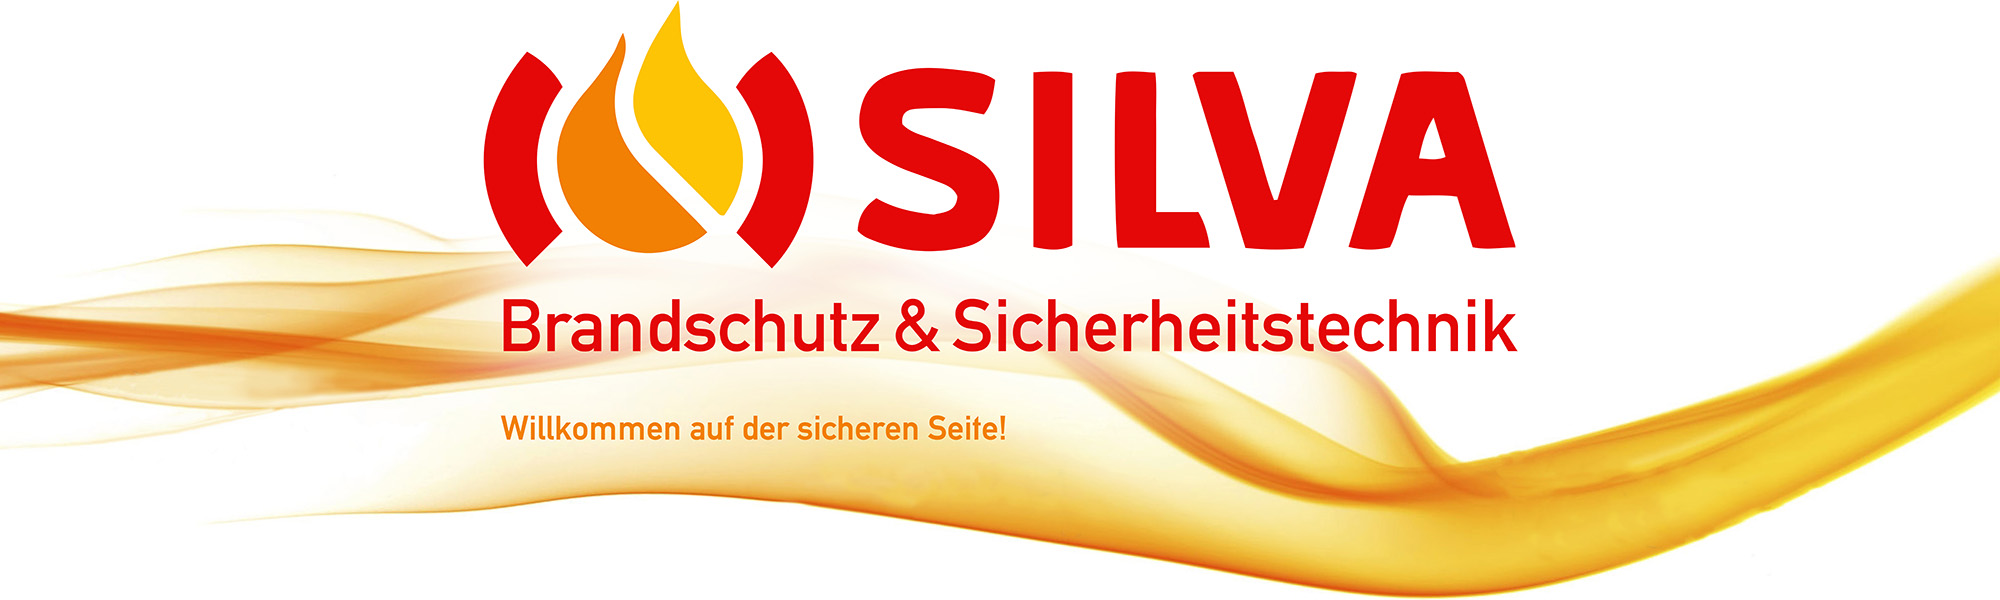 (c) Silva-brandschutz.de